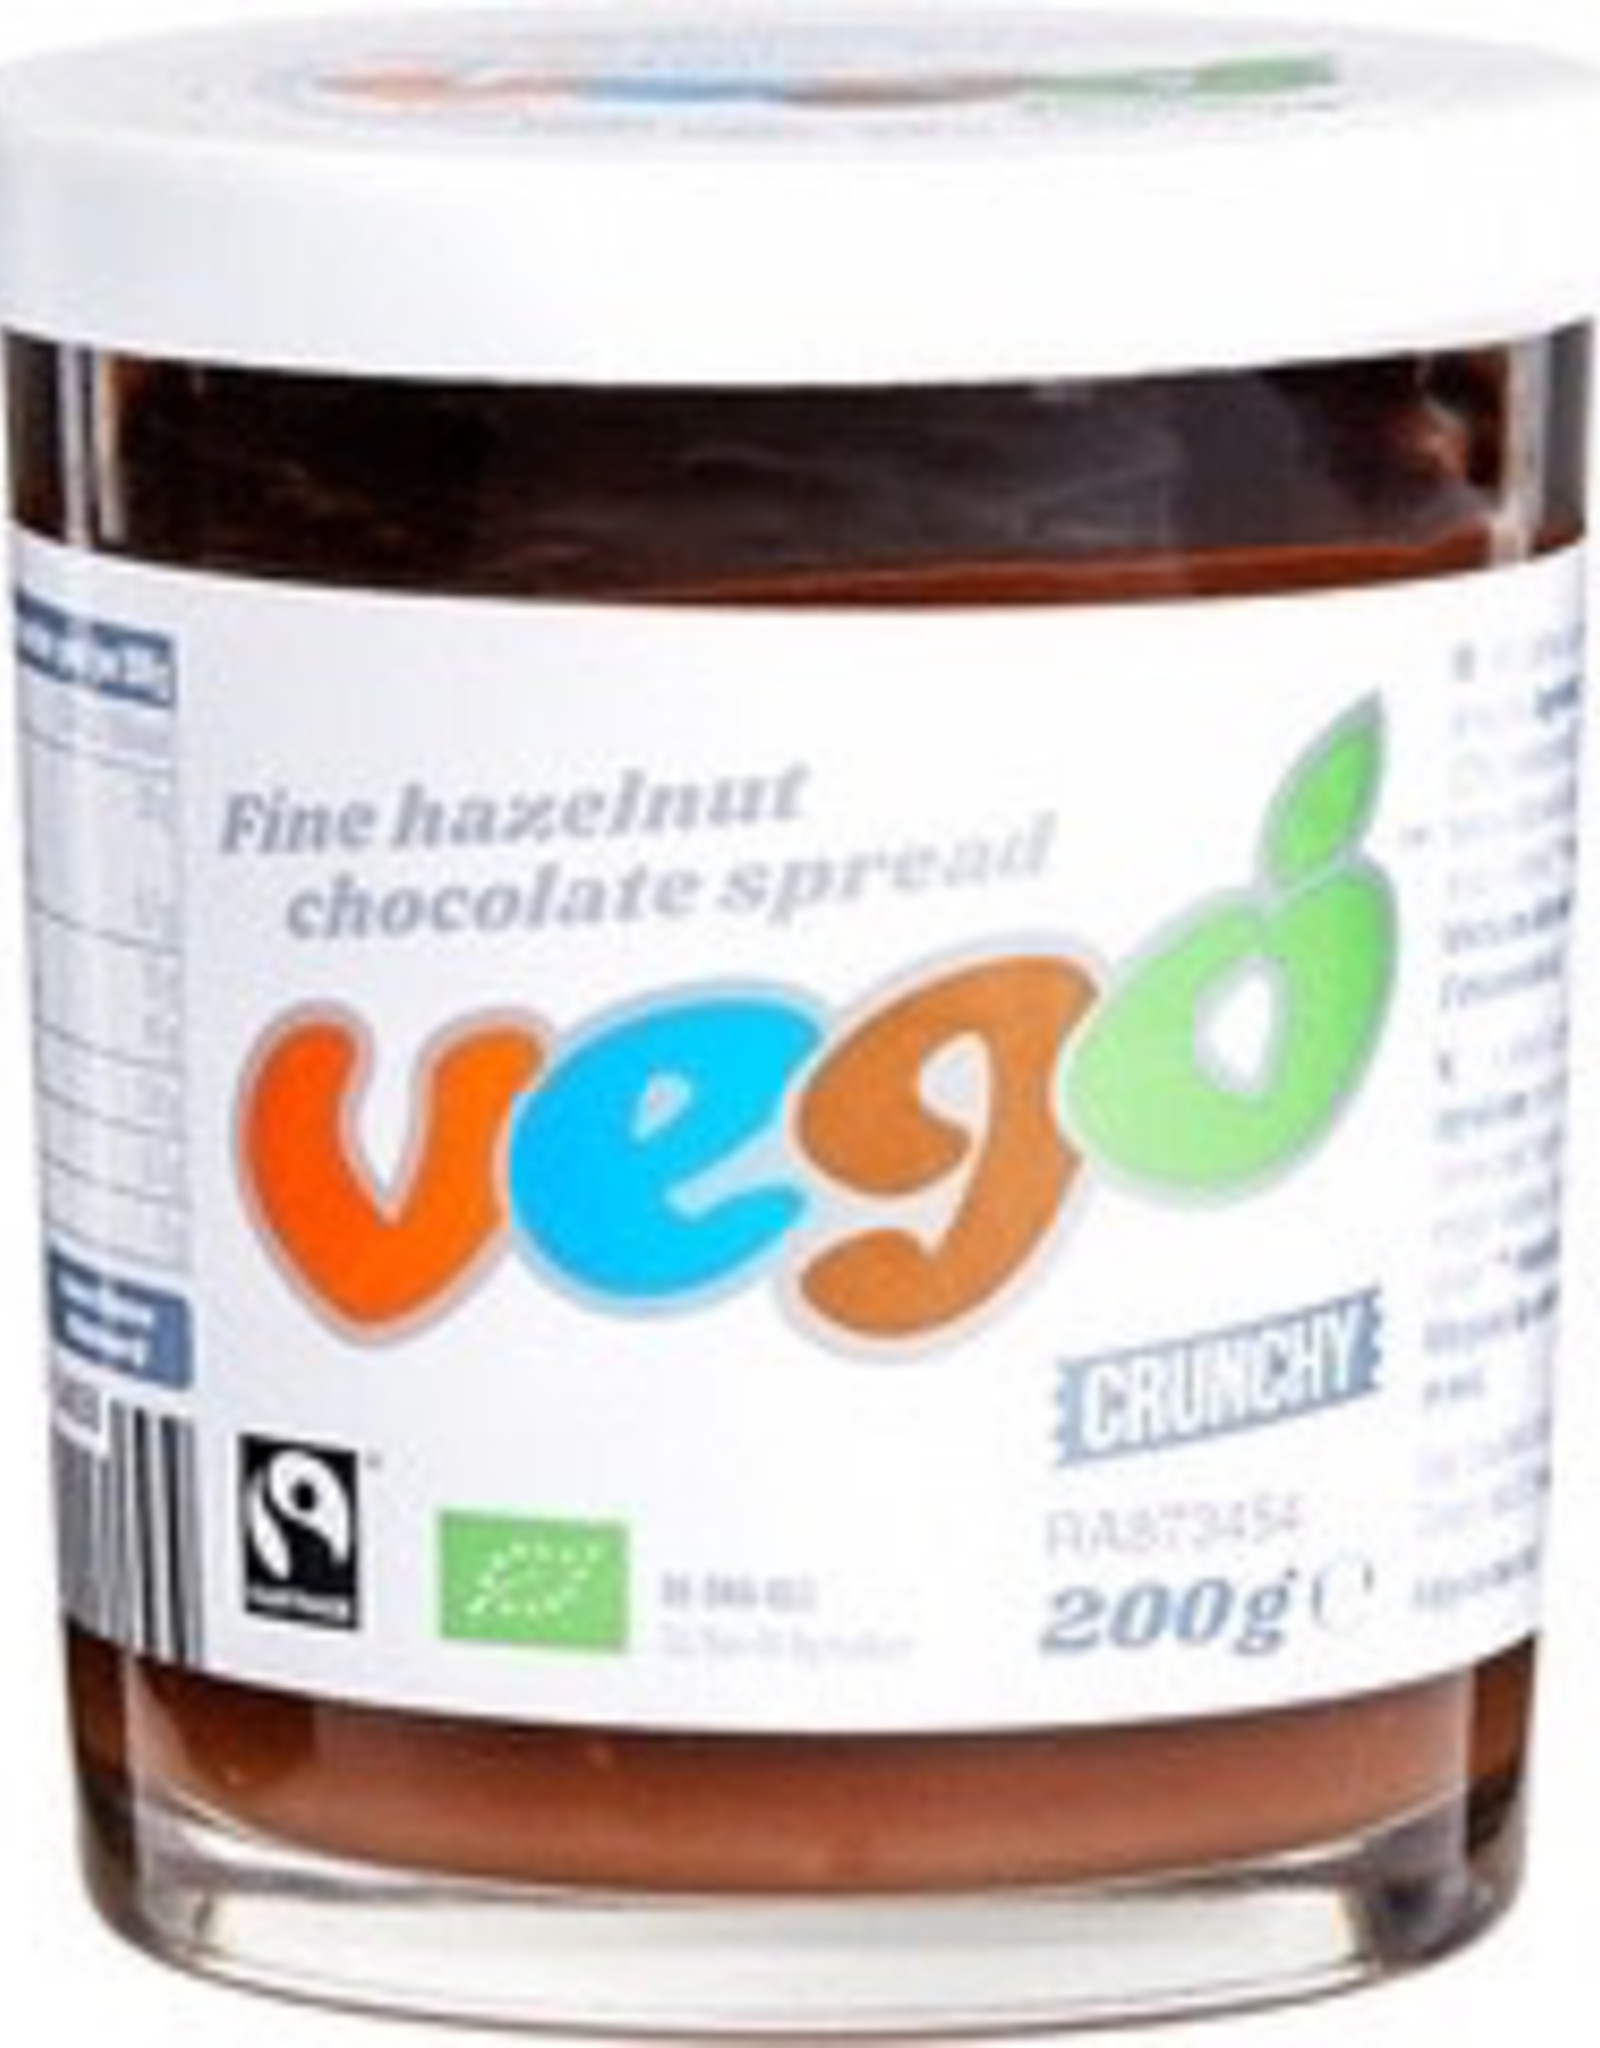 Vego Vego Hazelnut-choco spread crunchy bio 200g